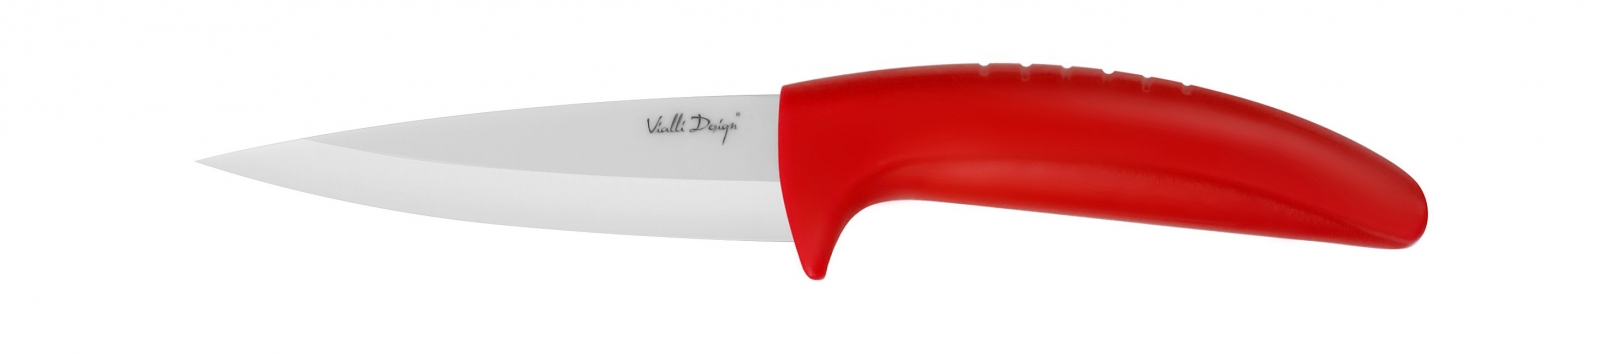 Nóż ceramiczny do obierania czerwony 9,5 cm W095AR Vialli Design